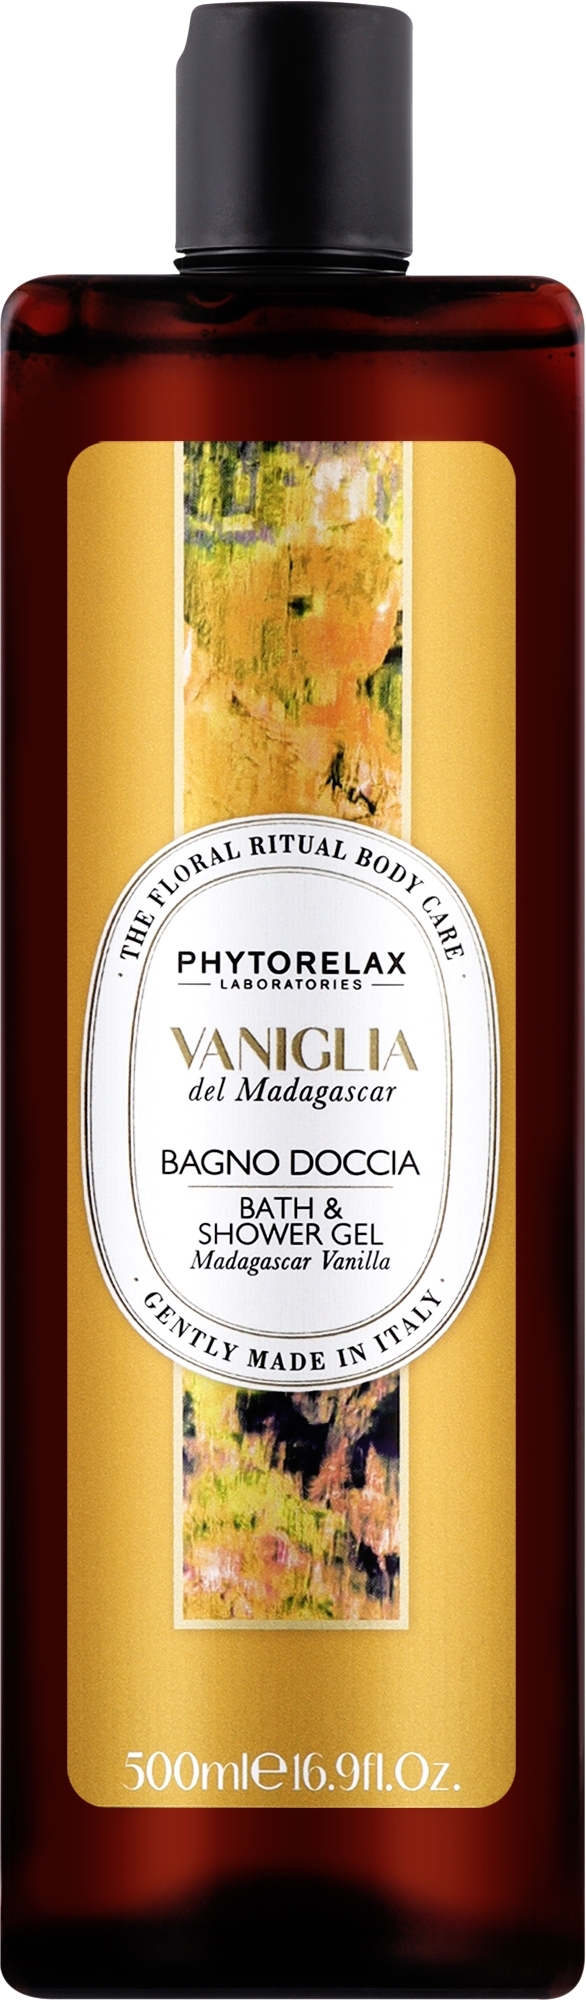 Żel pod prysznic i do kąpieli Madagascar Vanilla - Phytorelax Laboratories Floral Ritual Bath & Shower Gel — Zdjęcie 500 ml